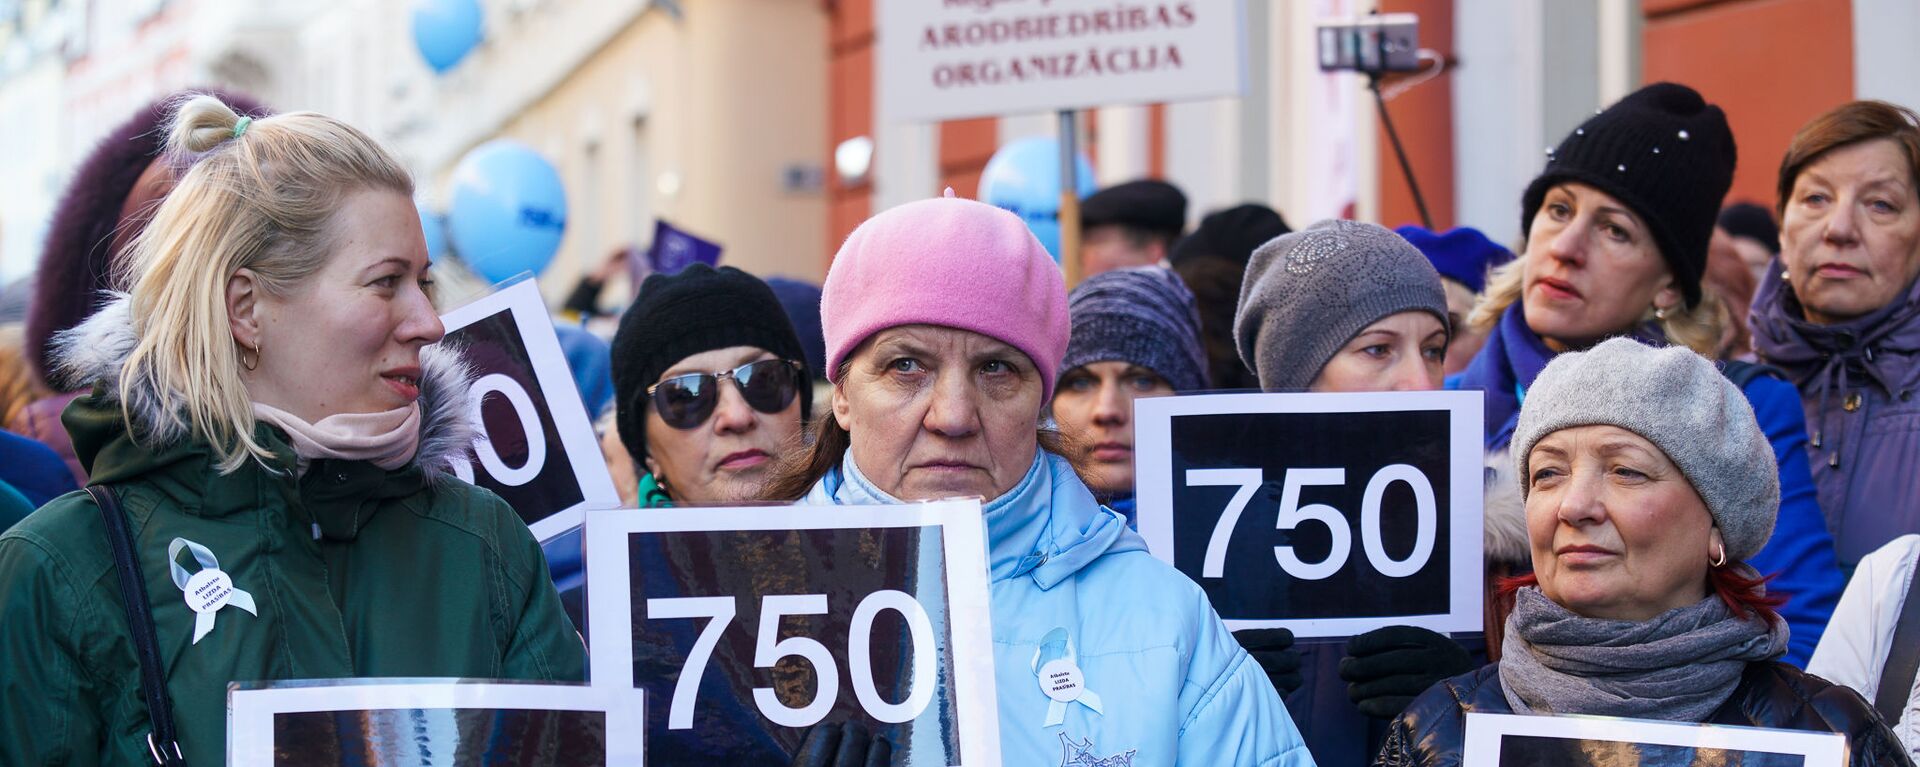 Акция протеста Латвийского профсоюза работников образования и науки с требованием выполнения ранее утвержденного графика повышения зарплат - Sputnik Латвия, 1920, 27.08.2020